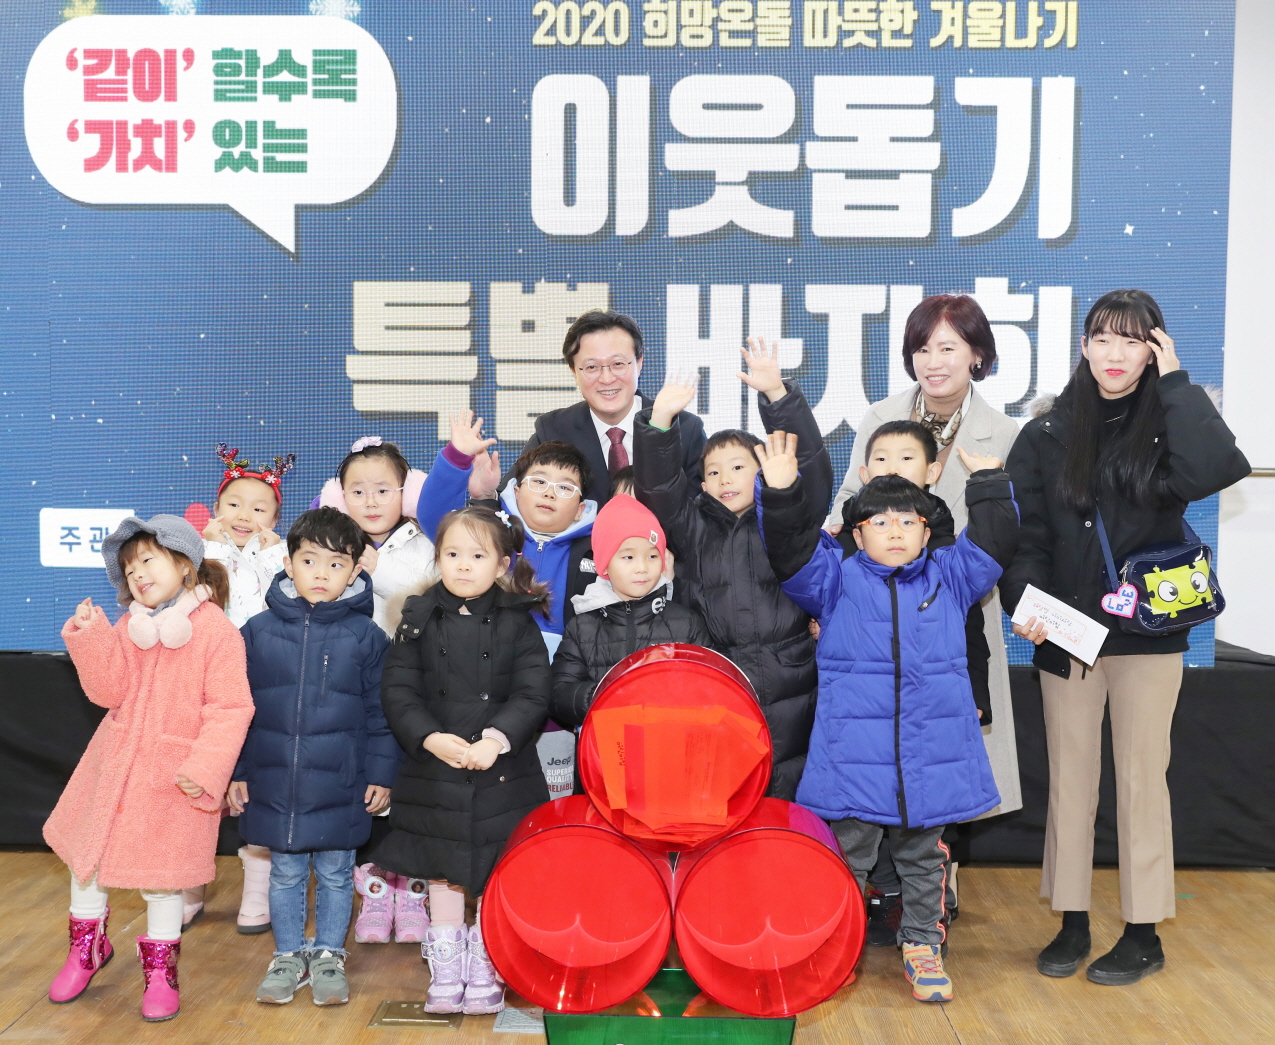 채현일(뒷줄 가운데) 서울 영등포구청장이 지난해 12월 영등포구 영등포아트홀에서 열린 ‘2020 희망온돌 따뜻한 겨울나기’ 이웃돕기 특별바자회에서 어린이들과 기념사진을 찍고 있다. 2020.3.24. 영등포구 제공